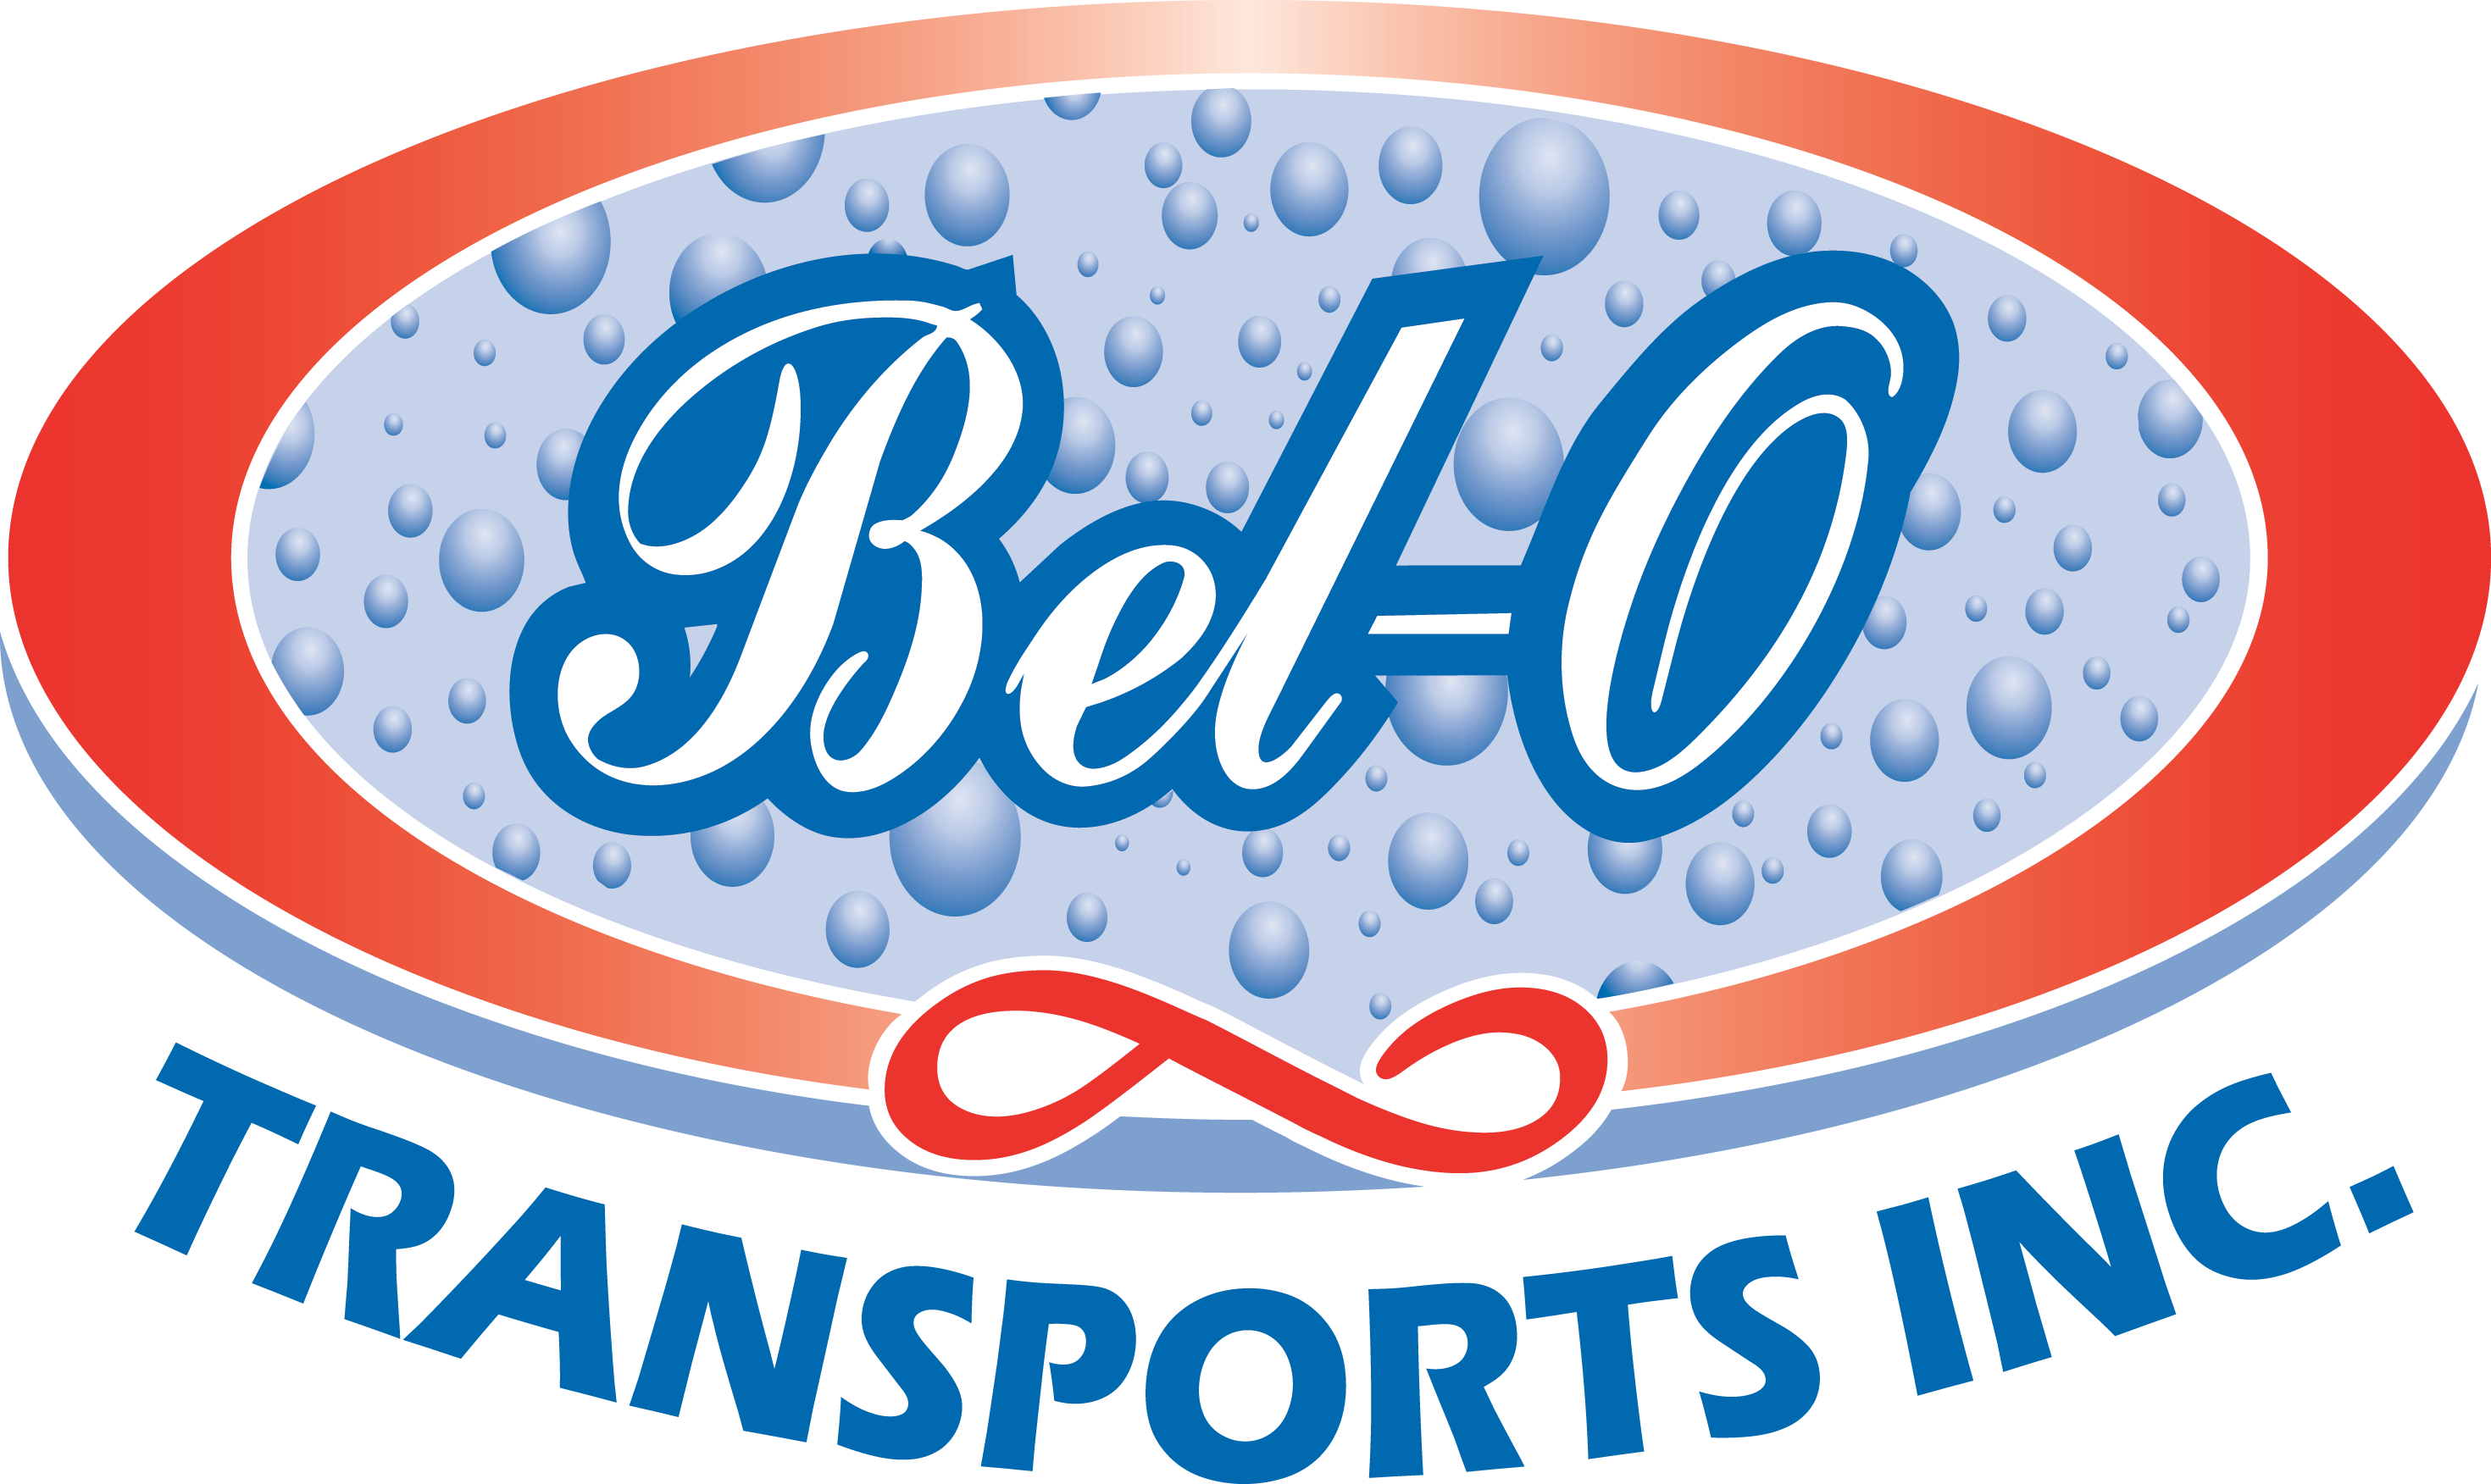 Bel-O